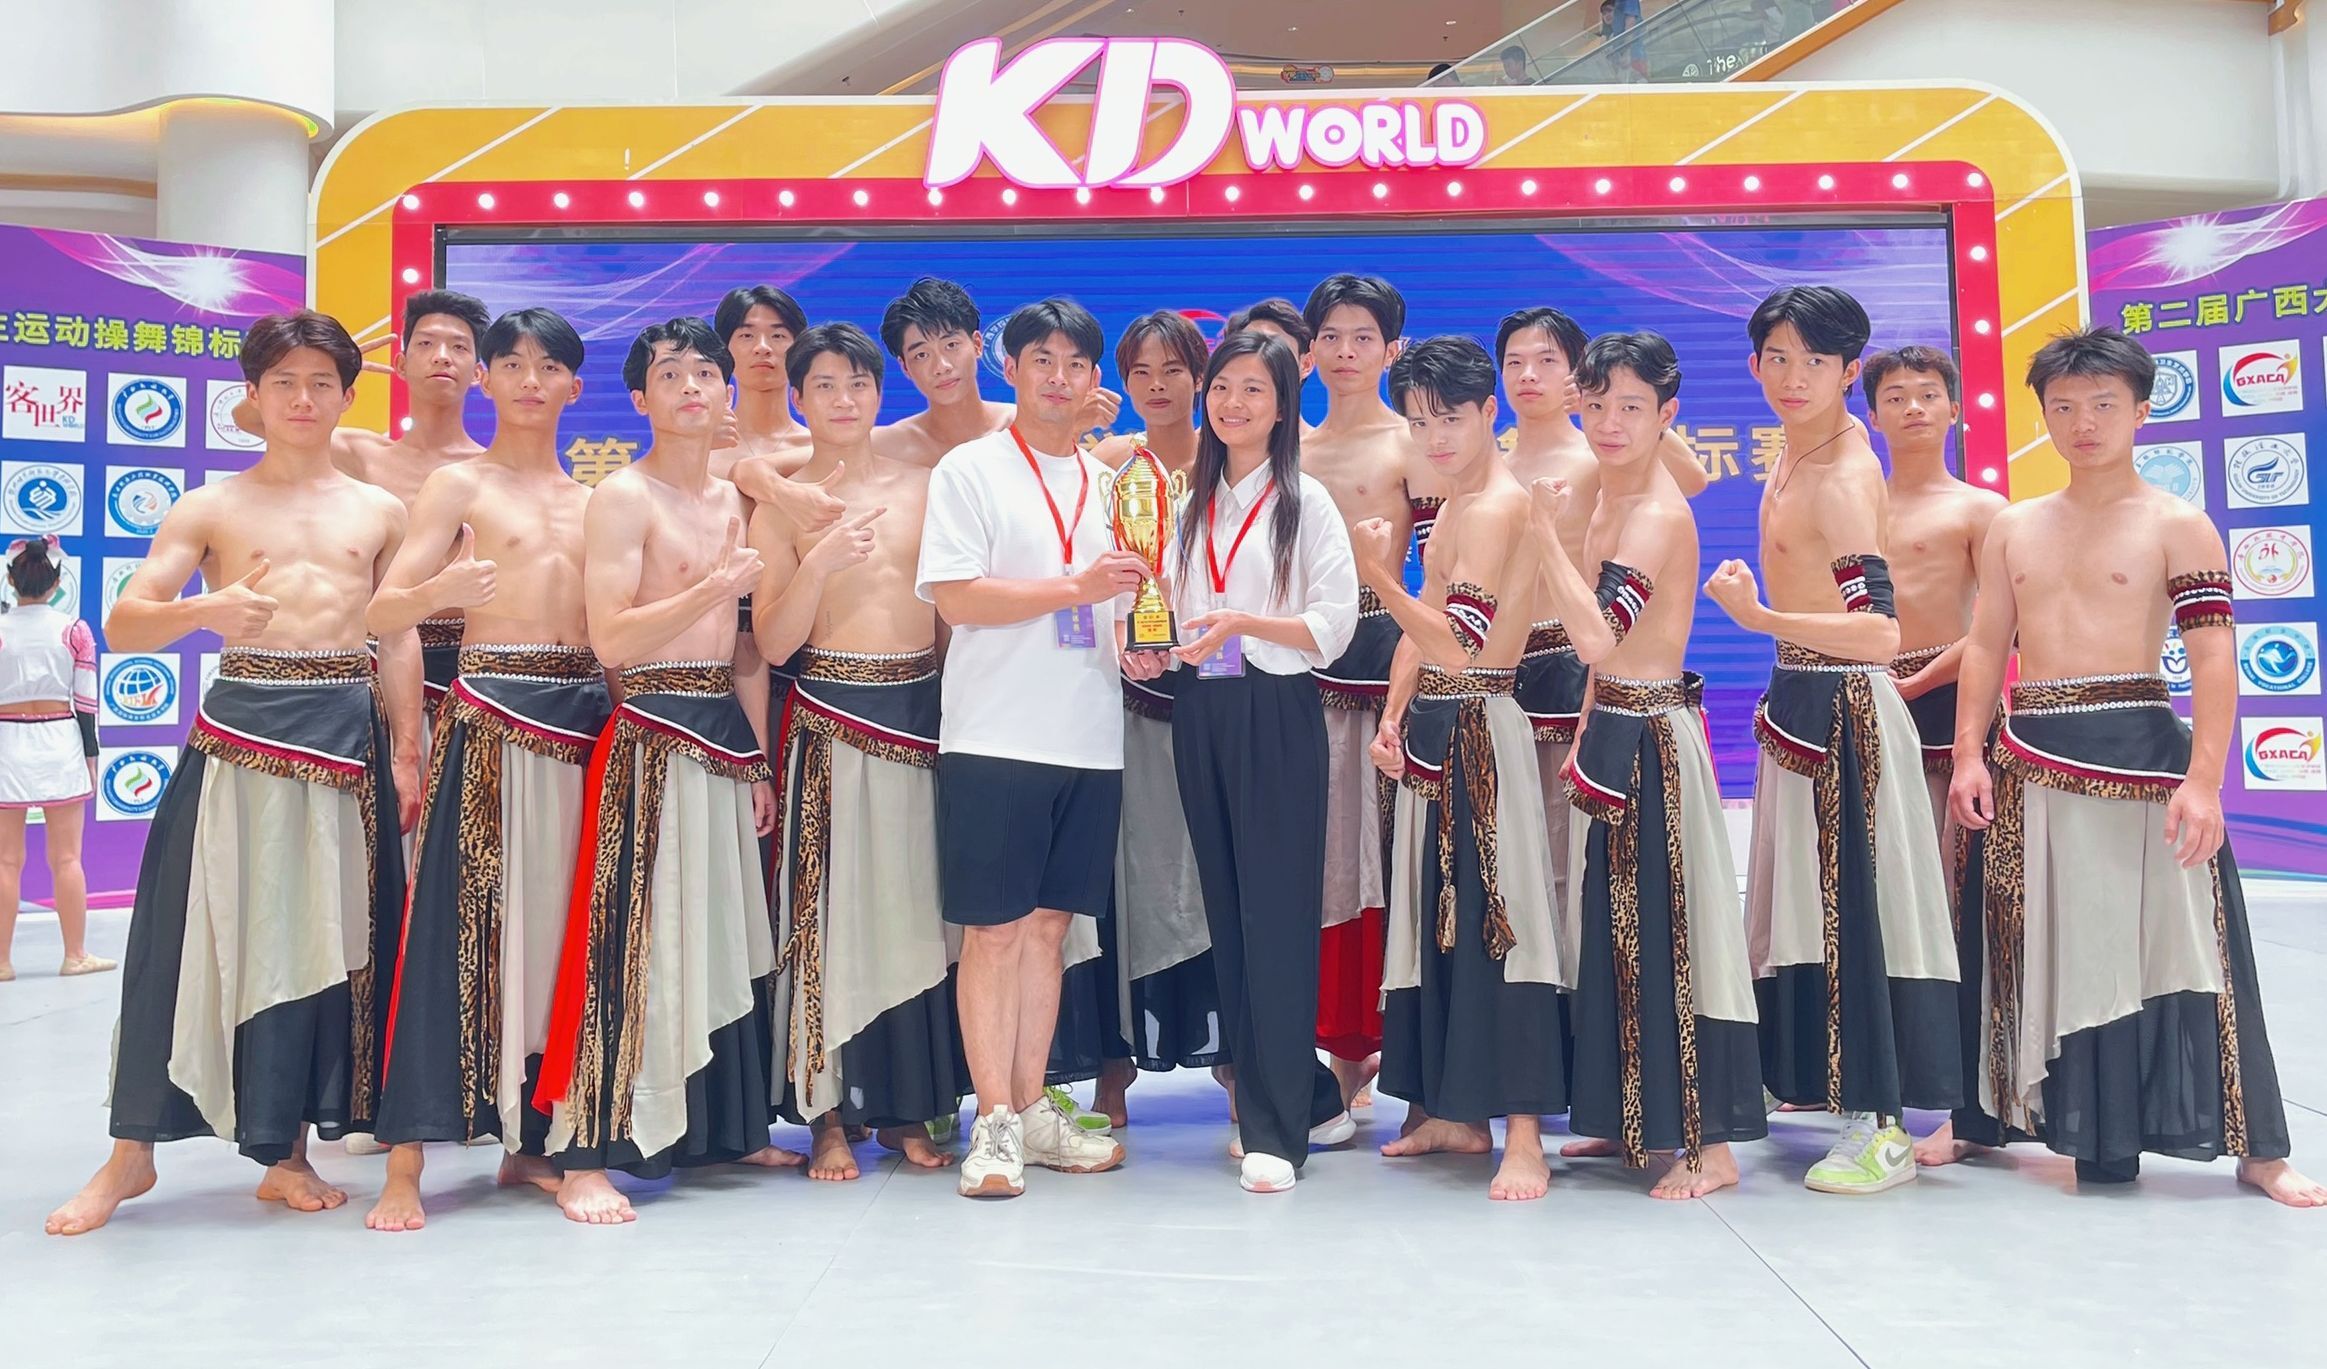 法甲比赛下注平台(中国)有限公司学子在第二届广西大学生运动操舞锦标赛中荣获民族民间舞赛项第一名